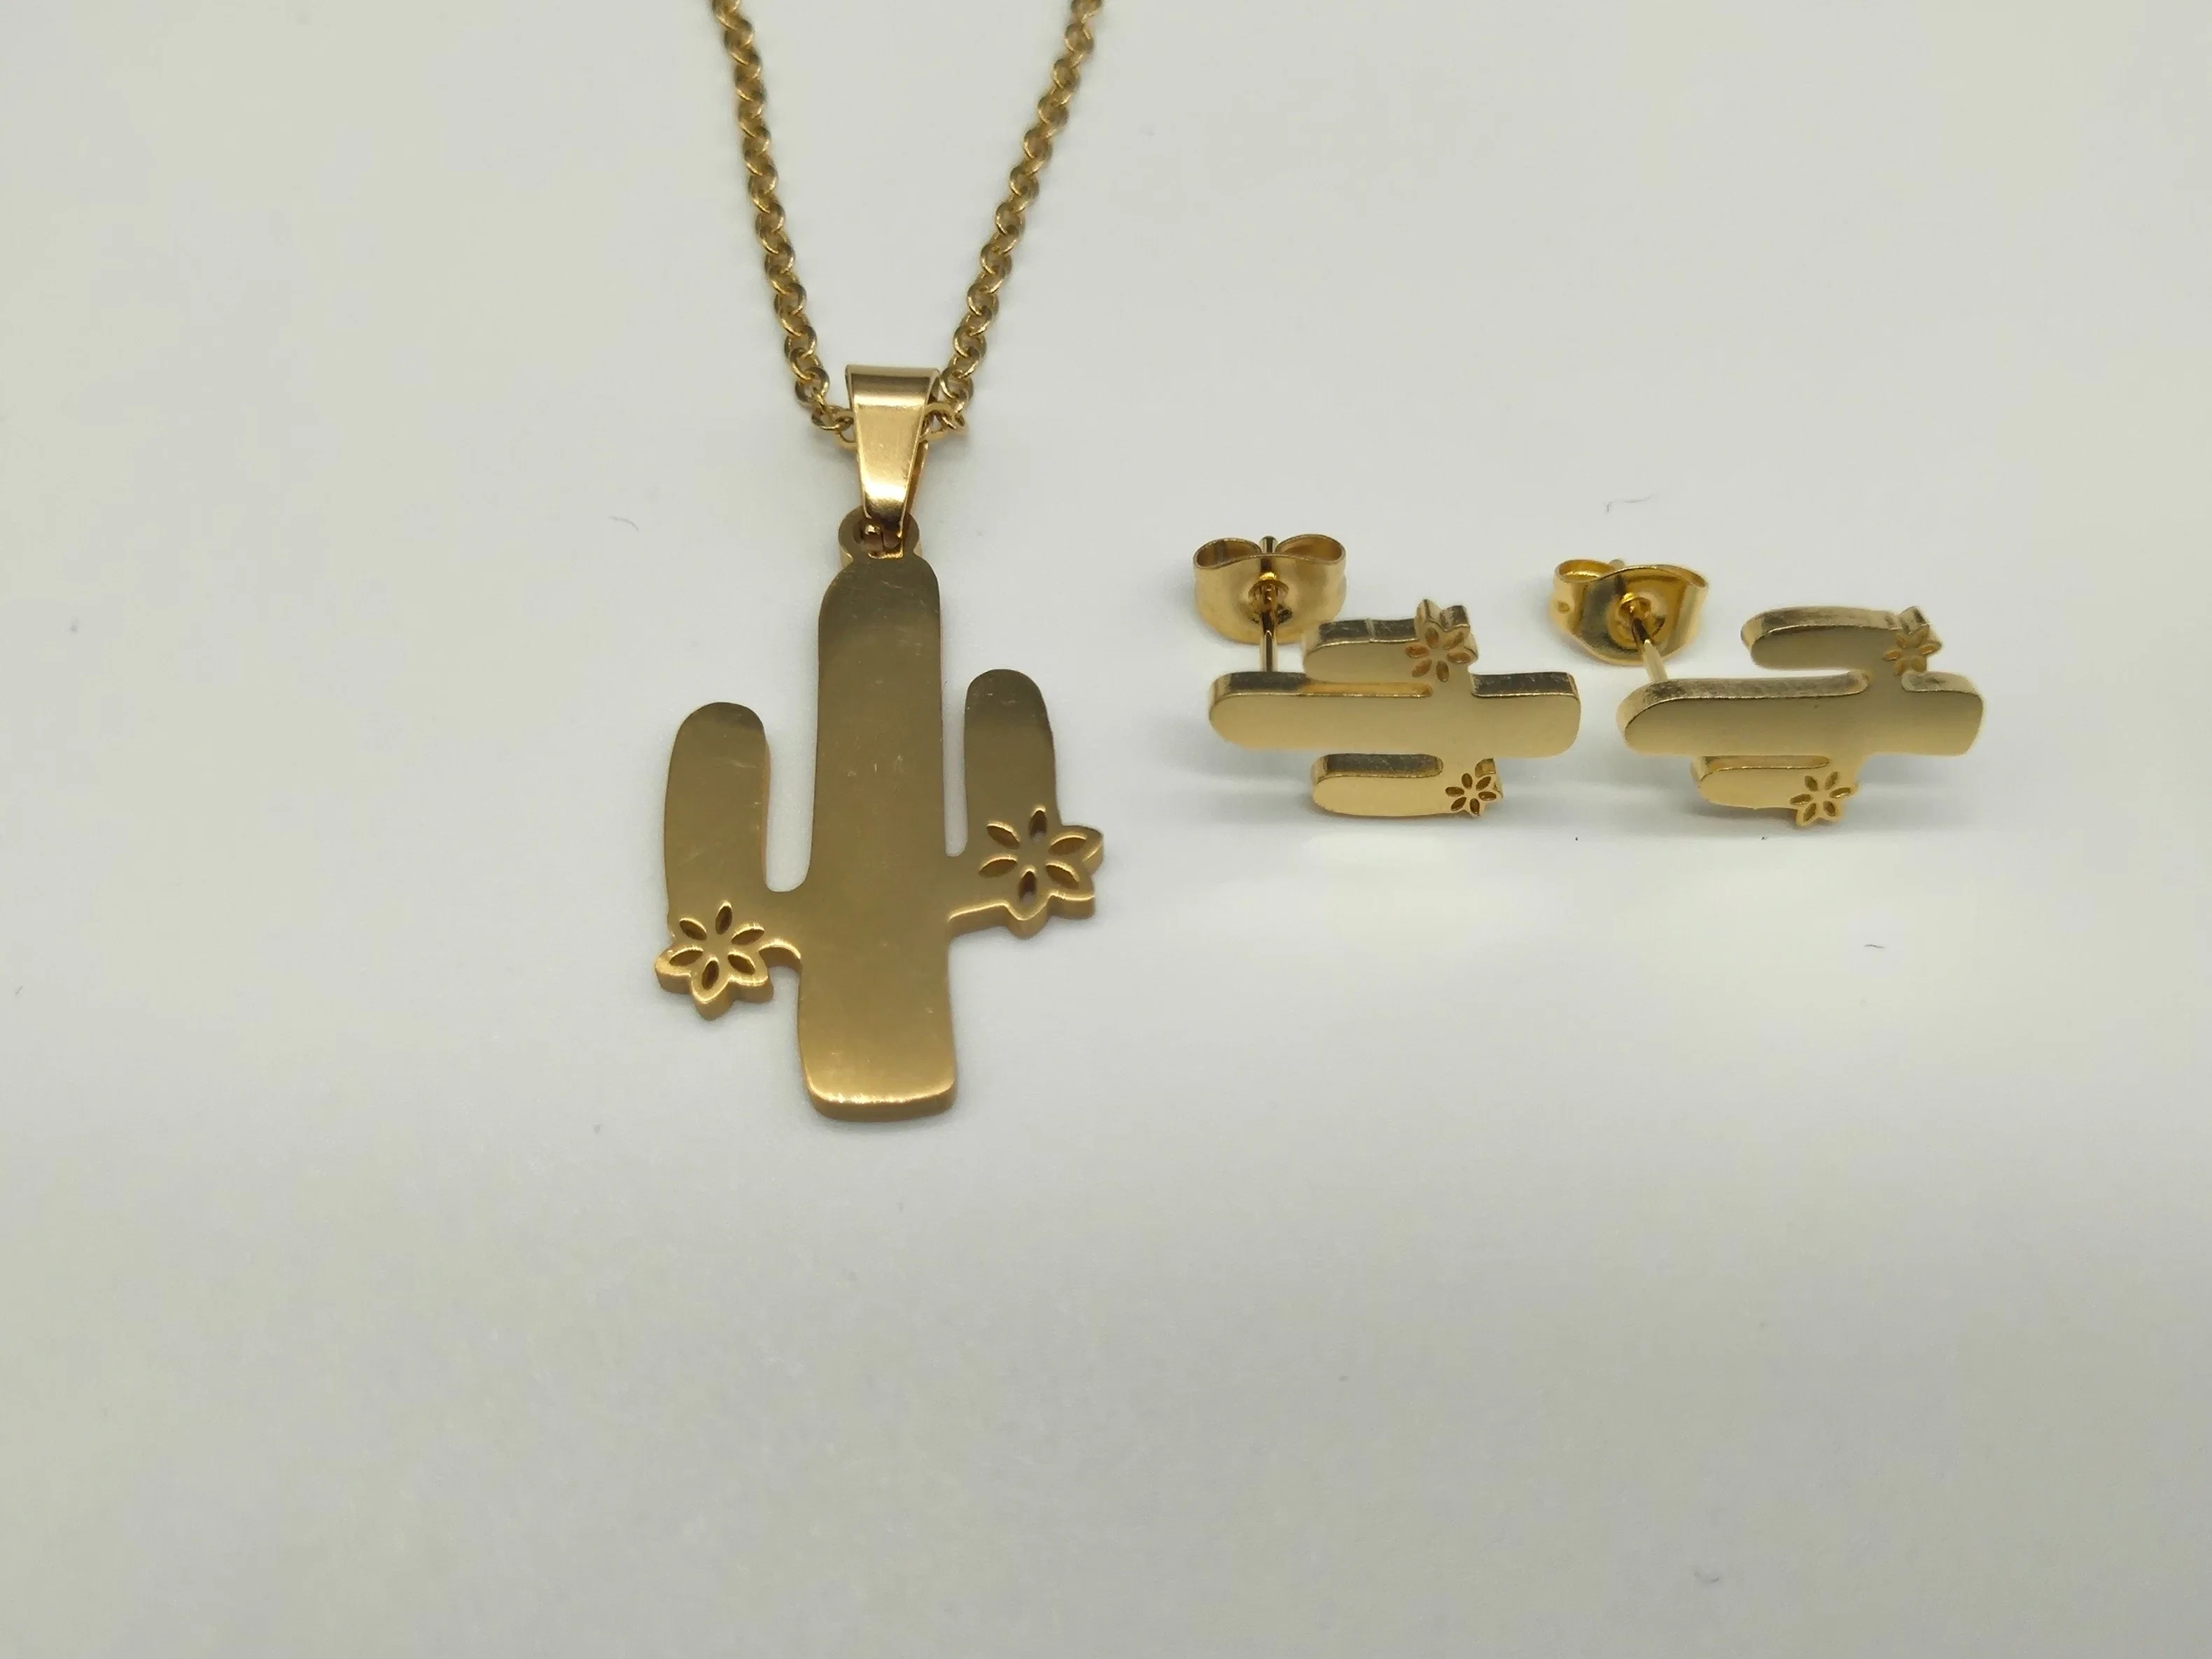 Heißer Verkauf Mode Edelstahl Schmuck Zubehör Personalisieren Vergoldet Kaktus Form Anhänger Halskette und Ohrringe für Mädchen